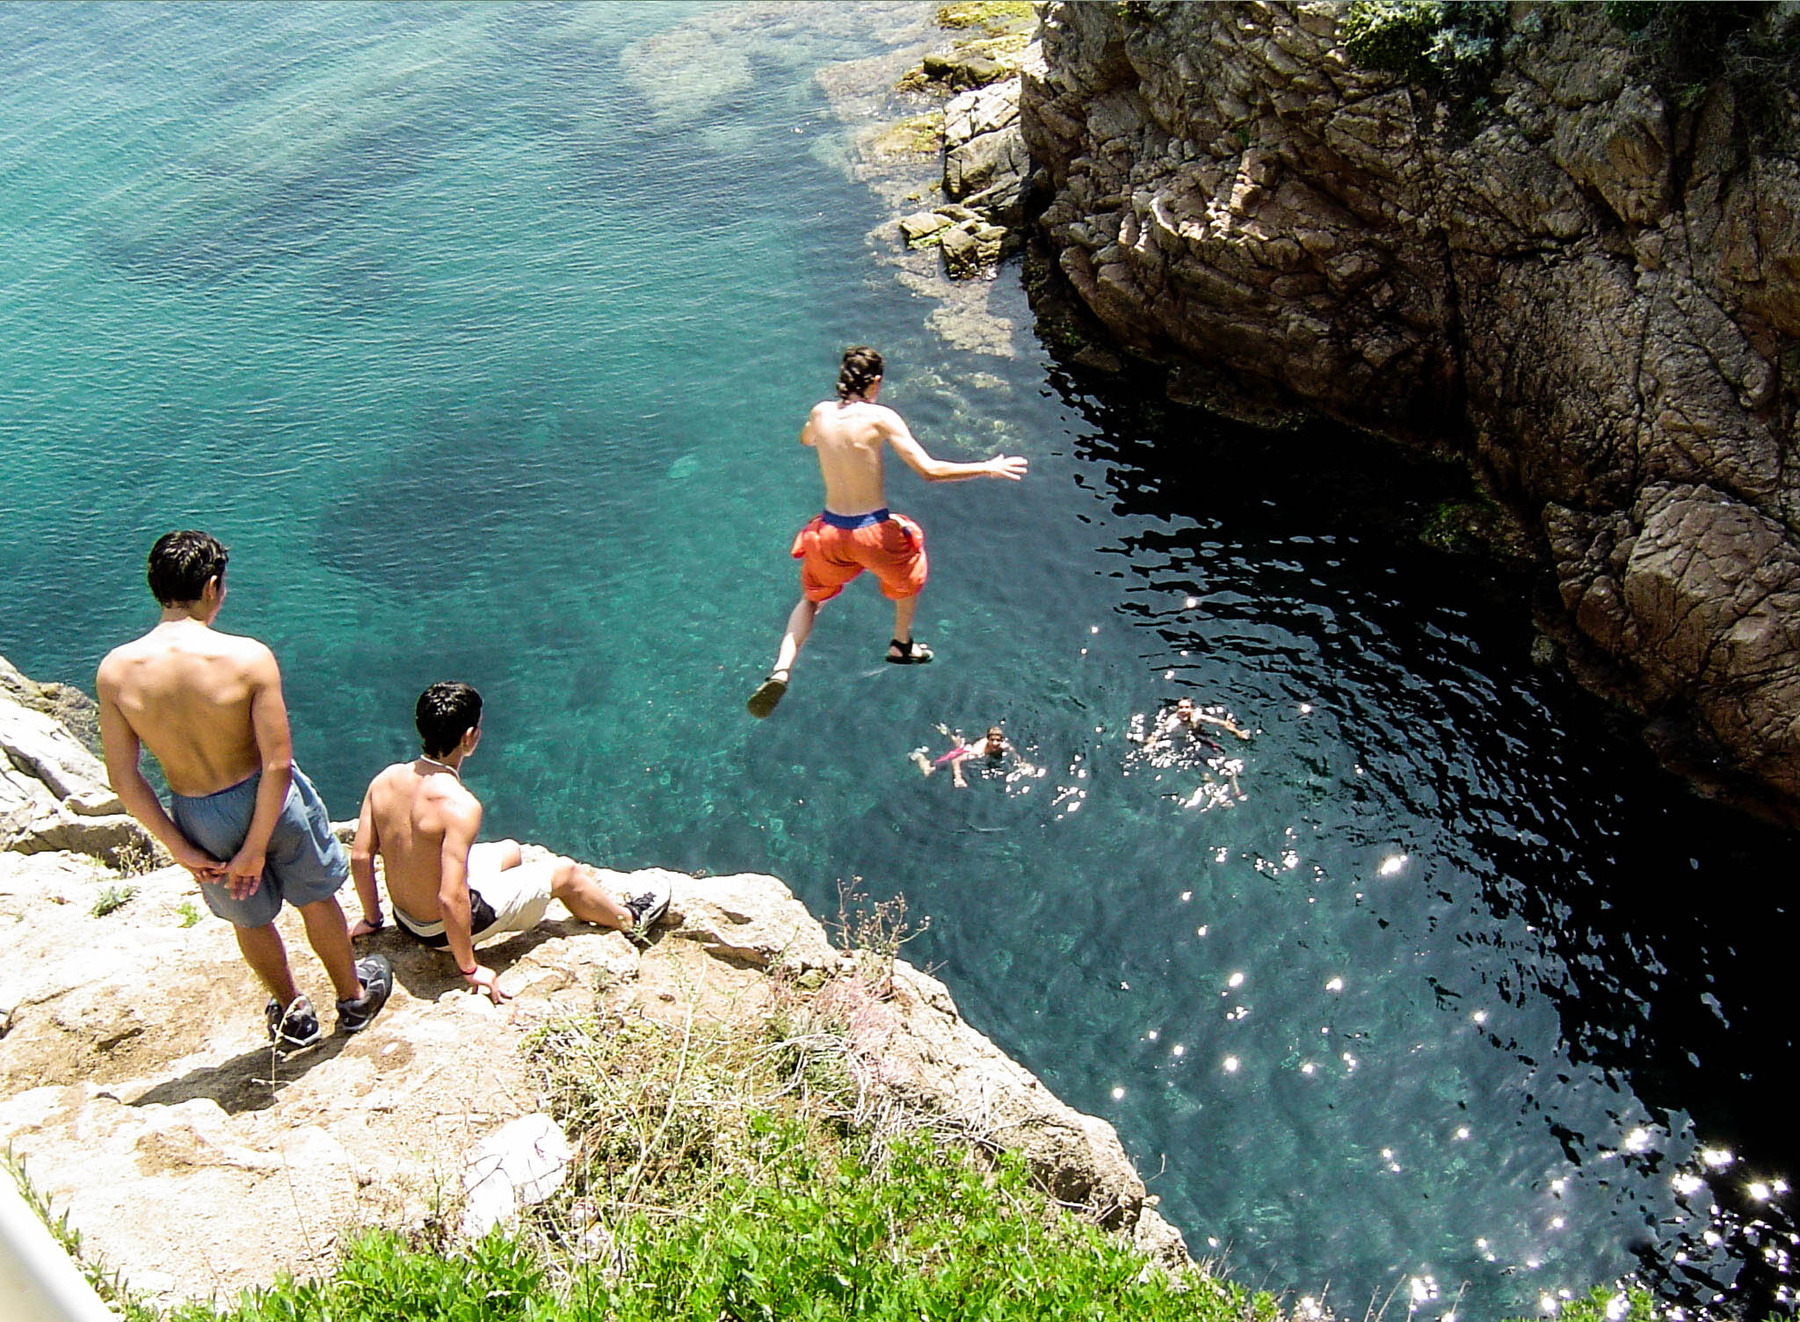 Разбежавшись прыгну со скалы... (Бланес, Испания, 22.06.2005) 